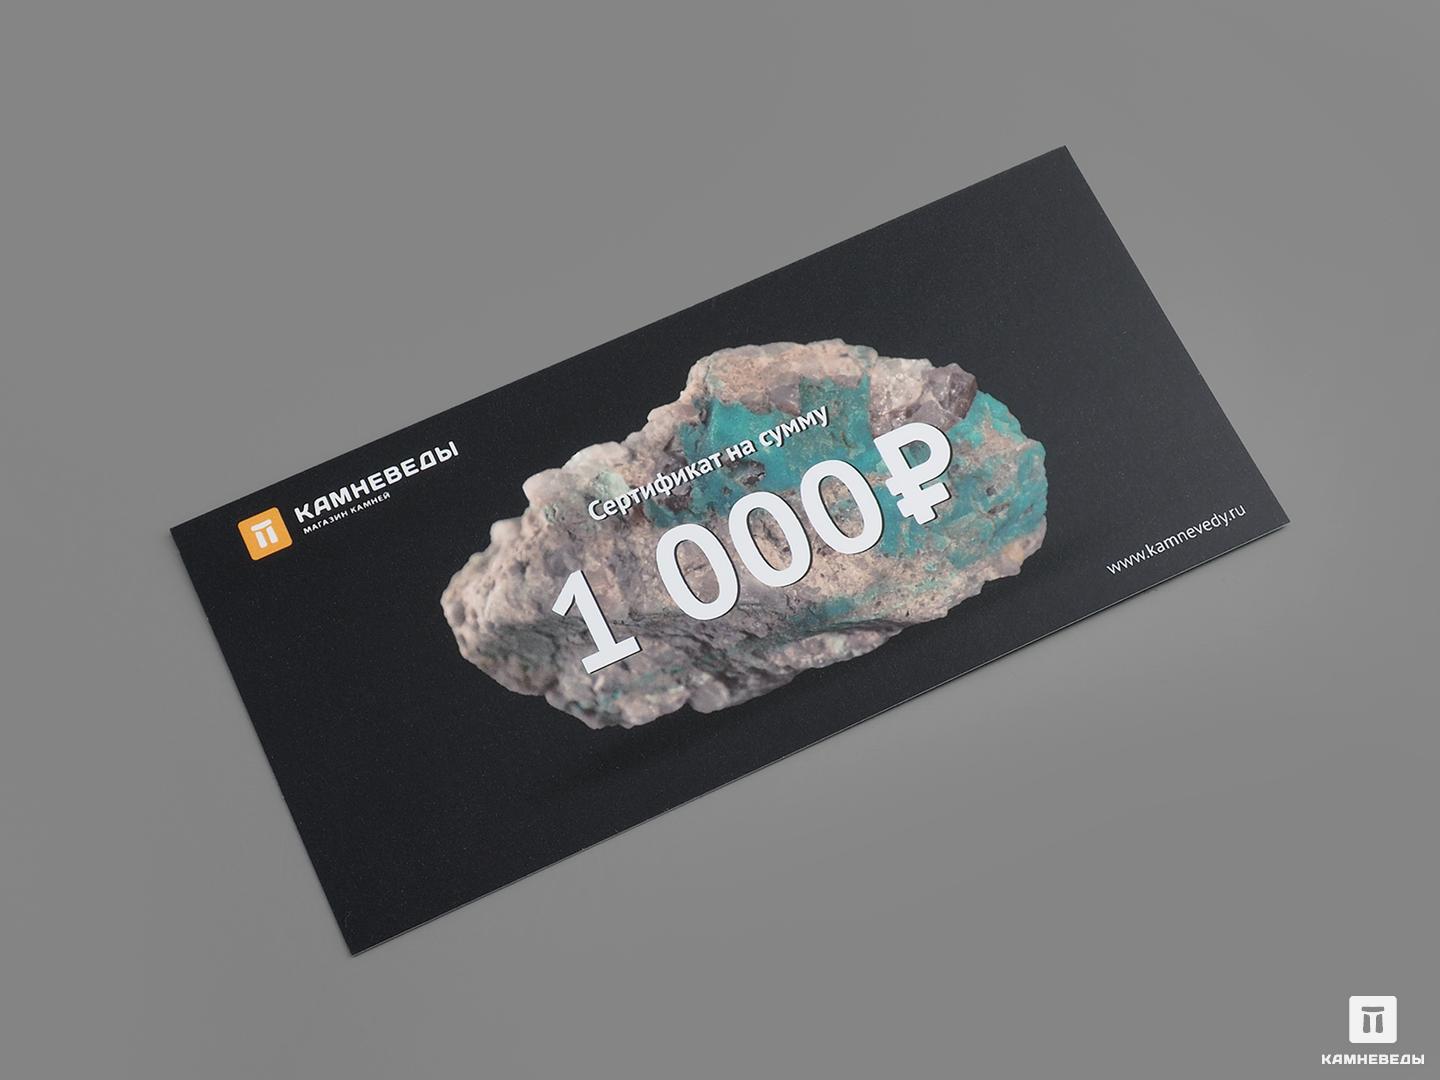 Подарочный сертификат на 1000 руб. открытка под подарочный сертификат